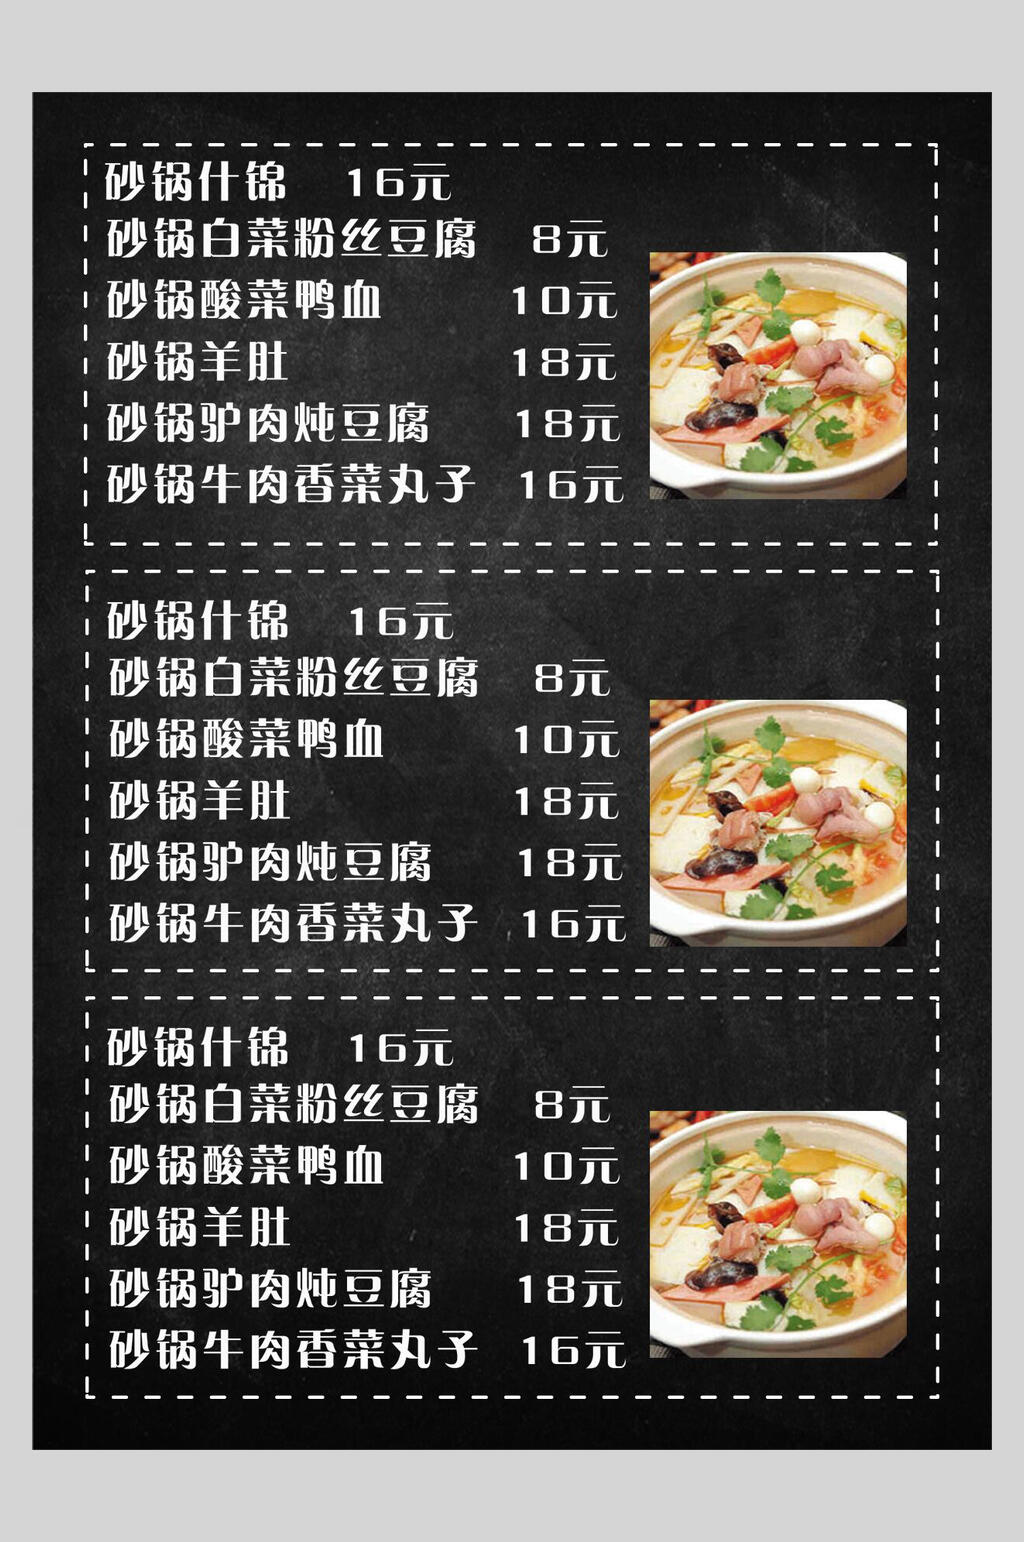 黑白砂锅菜菜谱菜单价格表海报